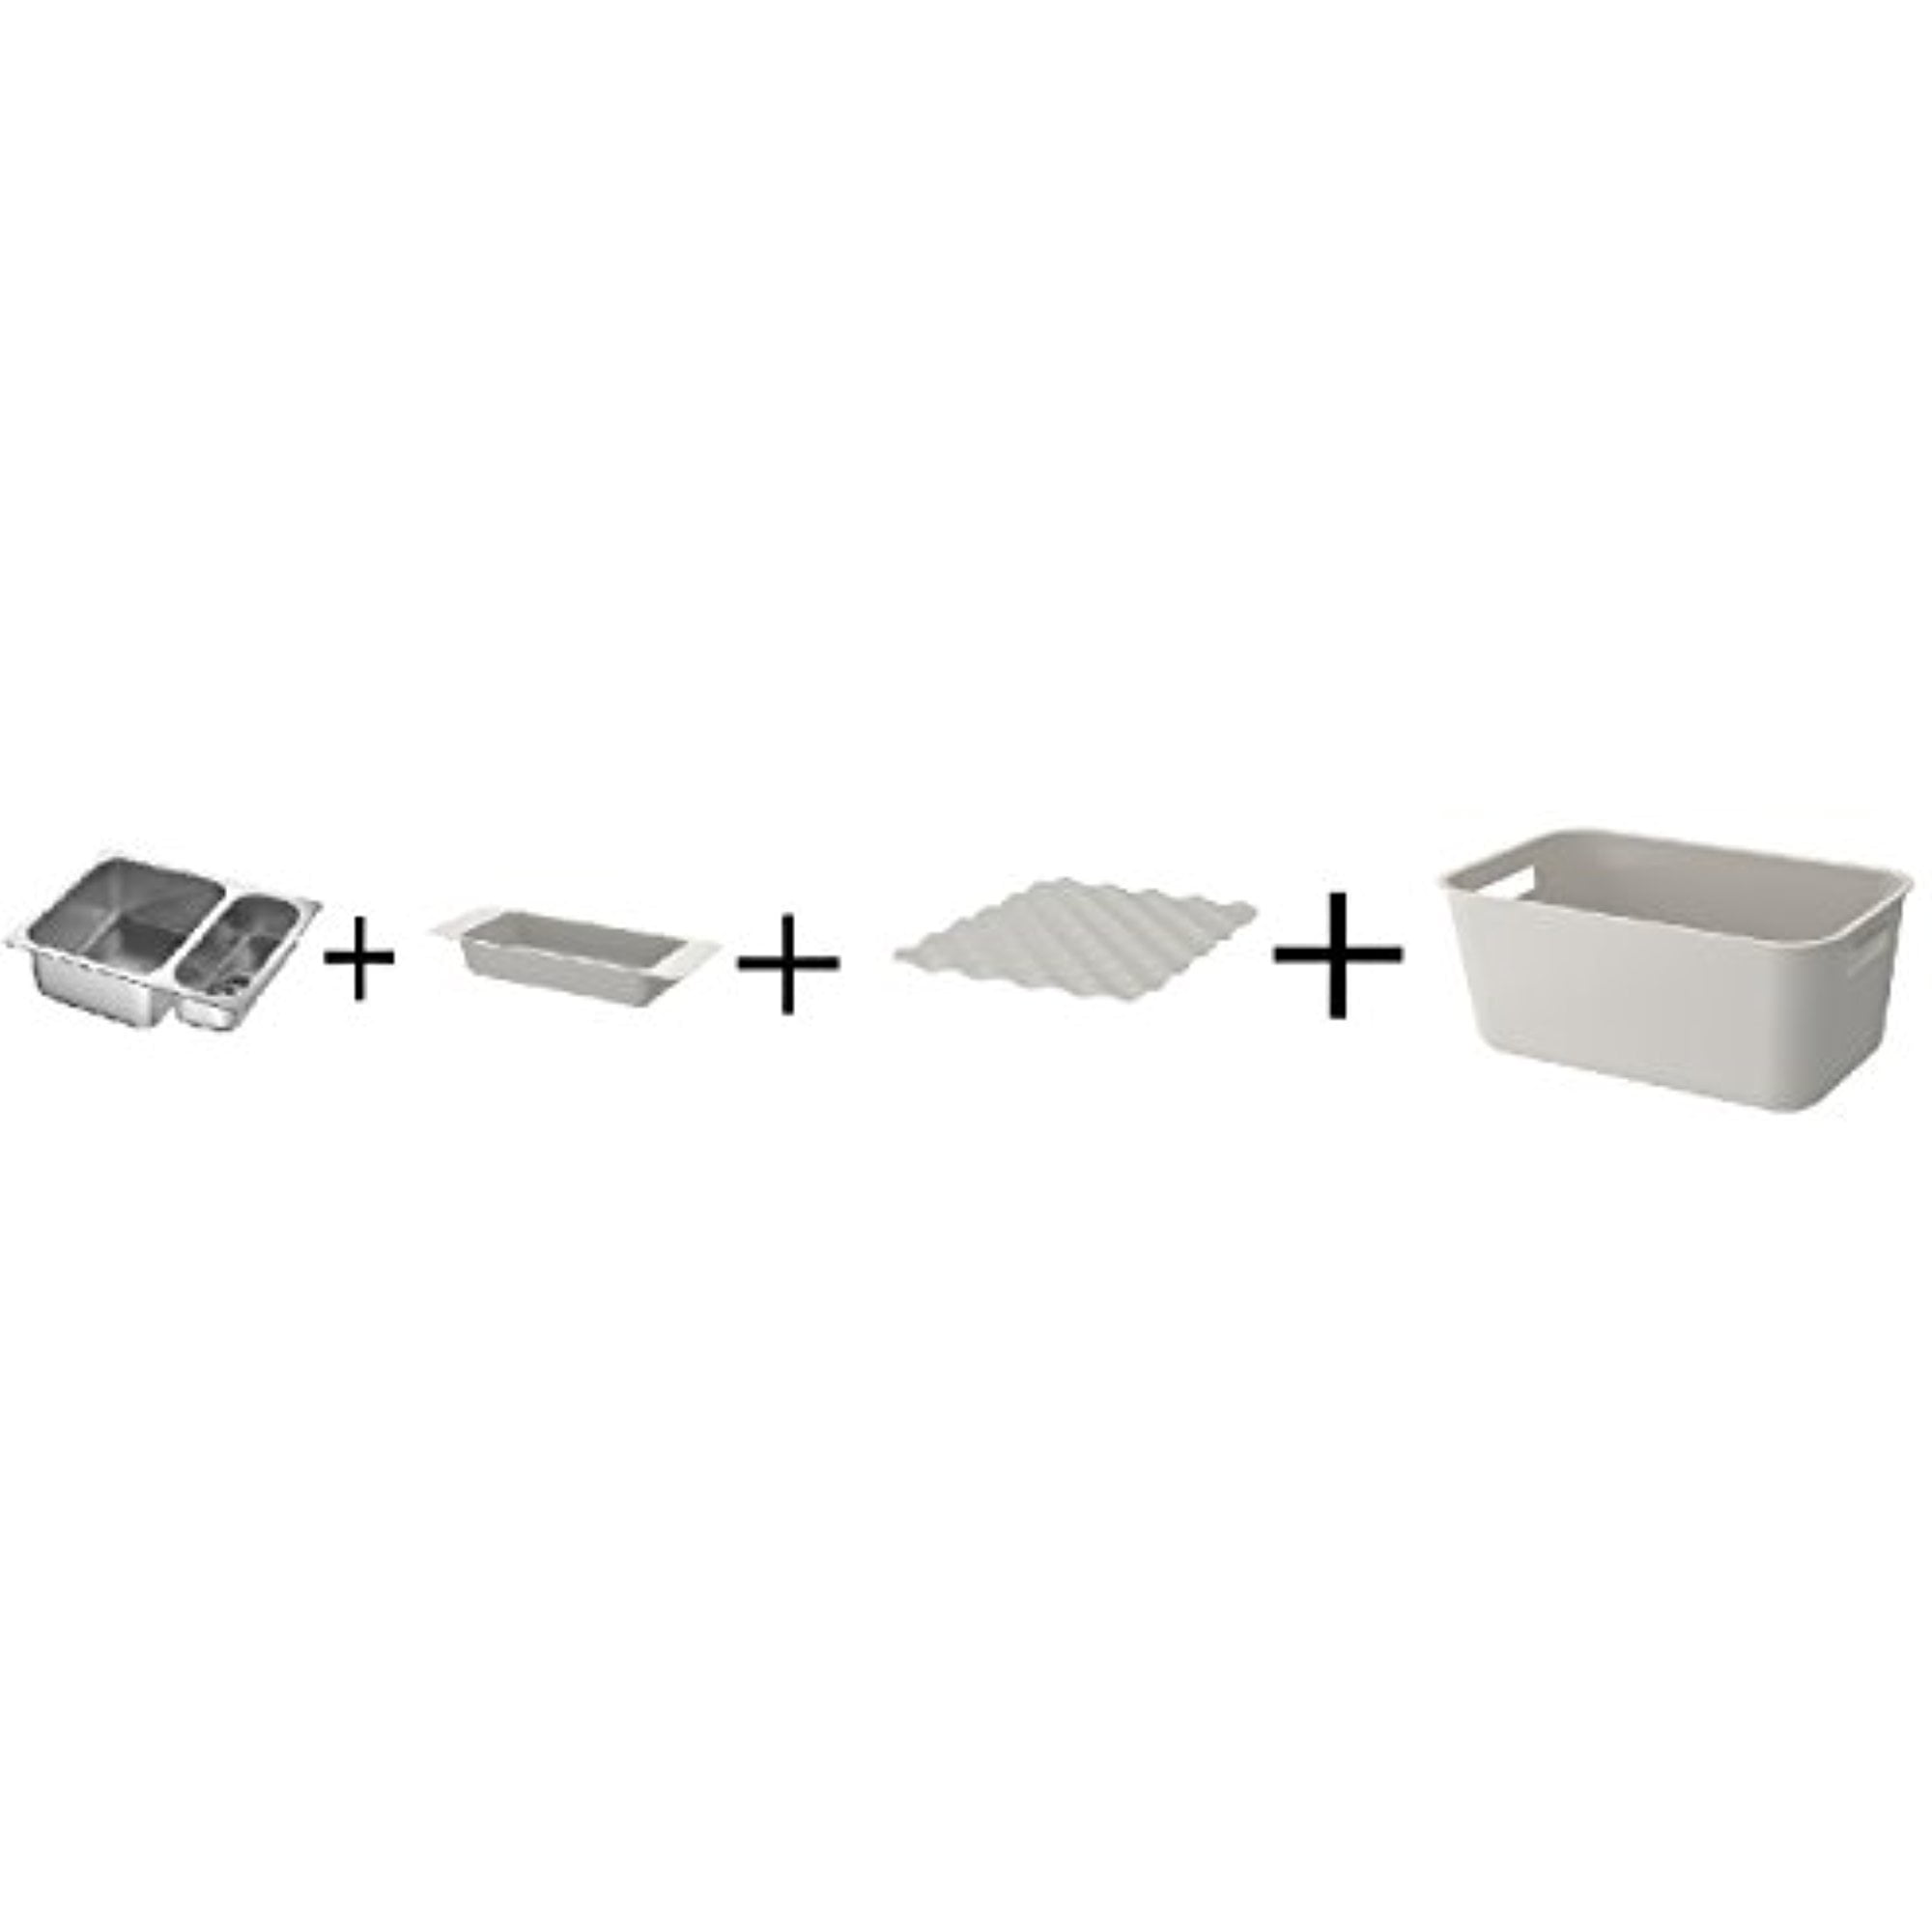 GRUNDVATTNET Rinsing tub, gray - IKEA